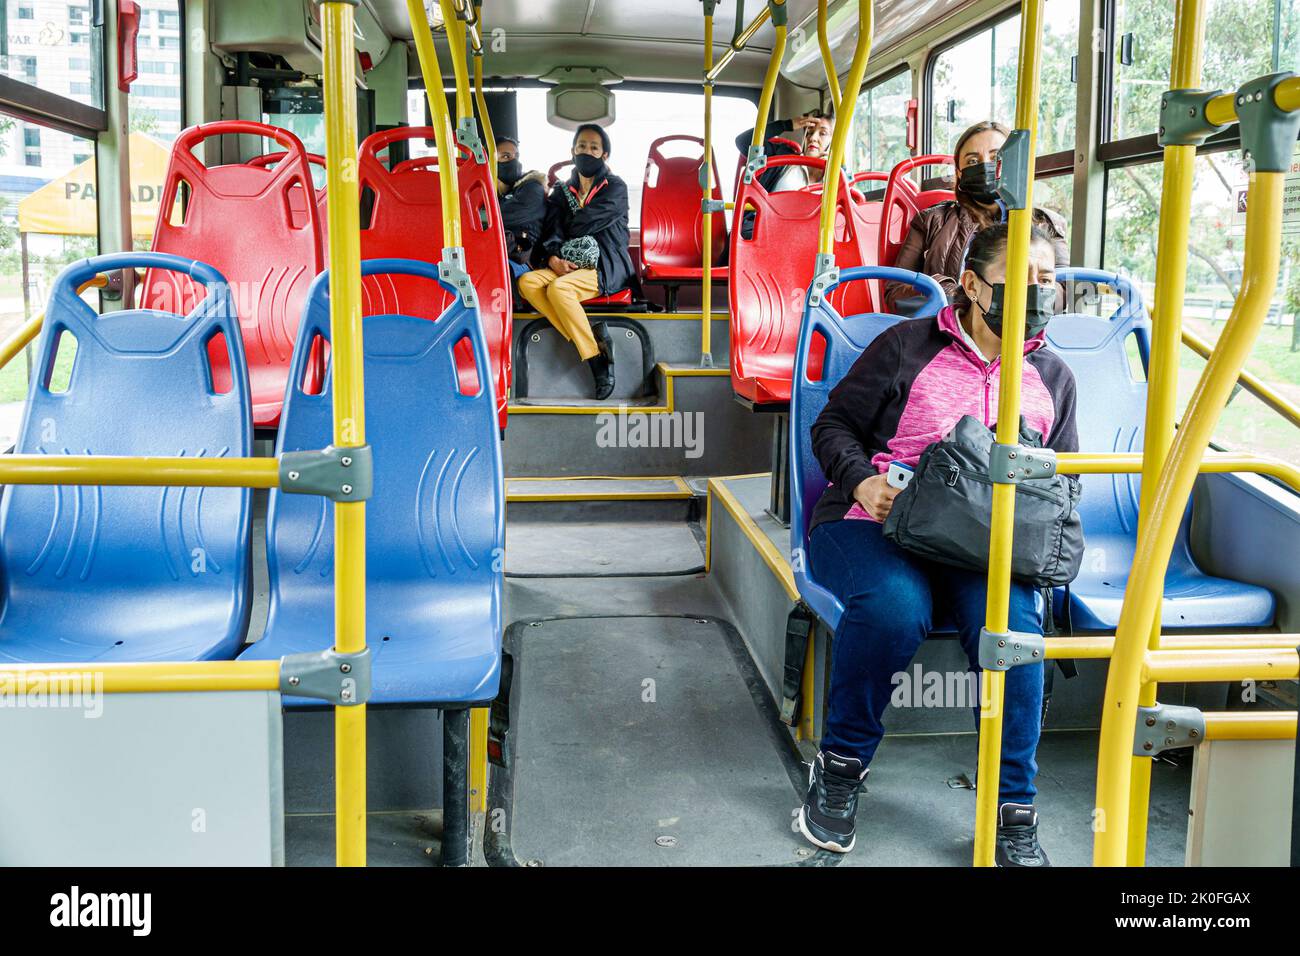 Bogotà Colombia, equitazione Transmilenio linea di autobus A206, sistema di transito rapido BRT trasporti pubblici autobus passeggeri passeggeri sedili cavalieri o Foto Stock